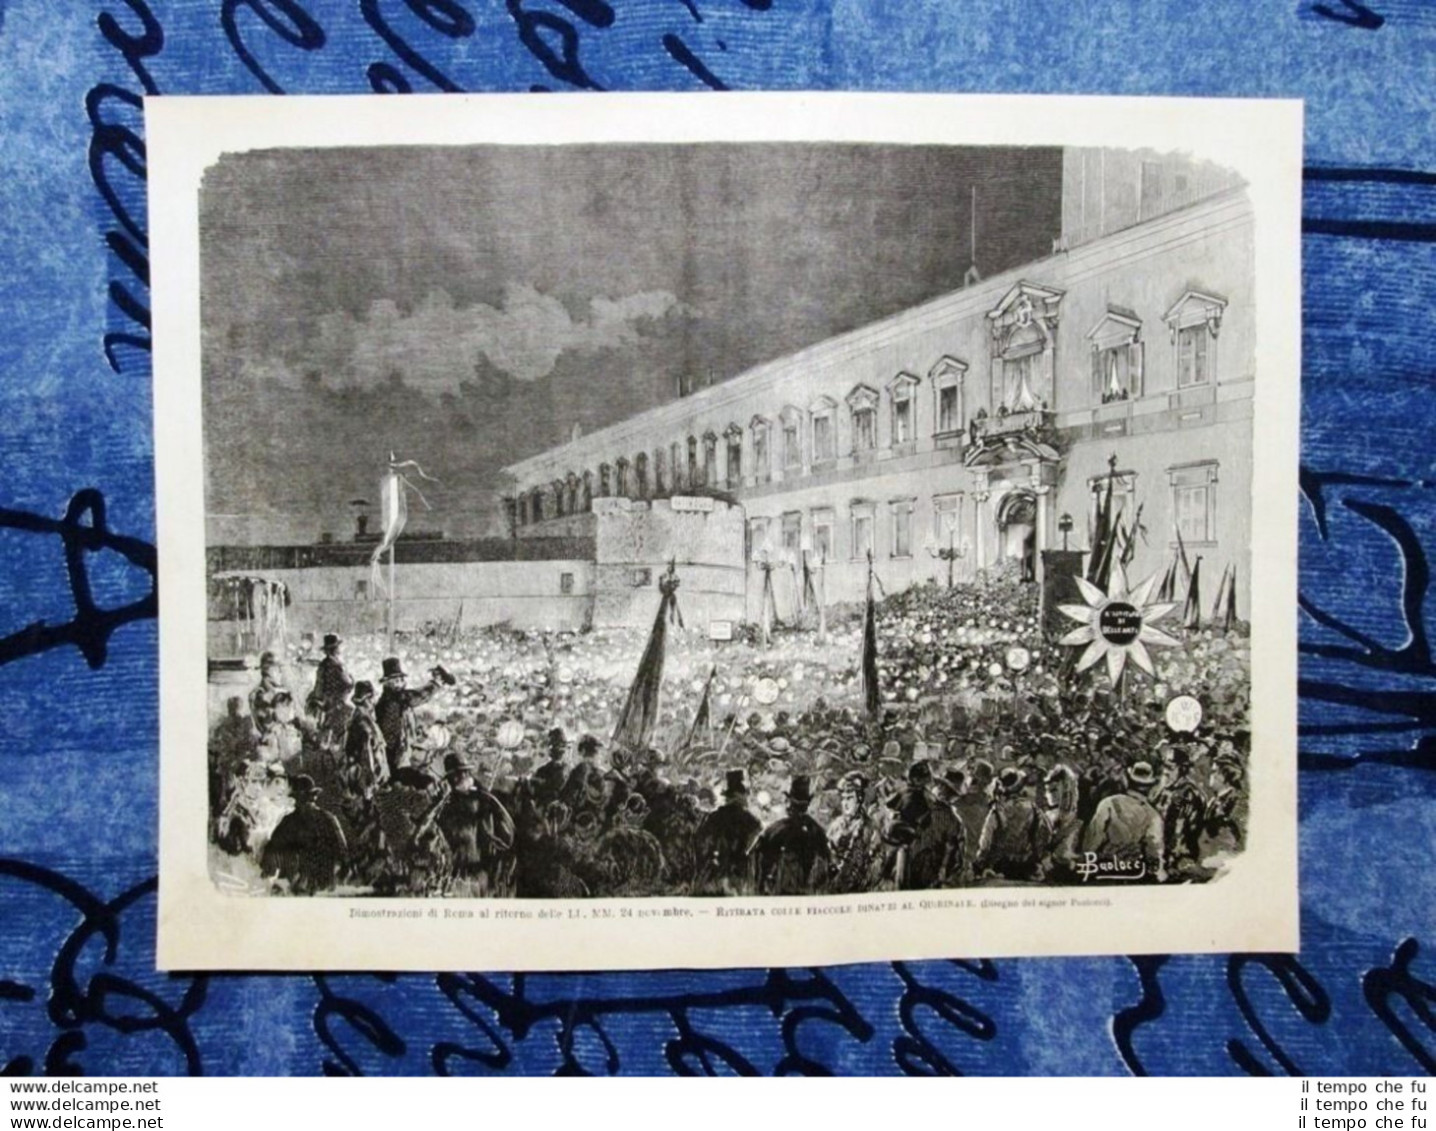 Le Dimostazioni Di Roma Ai Savoia 1878: Ritirata Con Le Fiaccole Al Quirinale - Before 1900